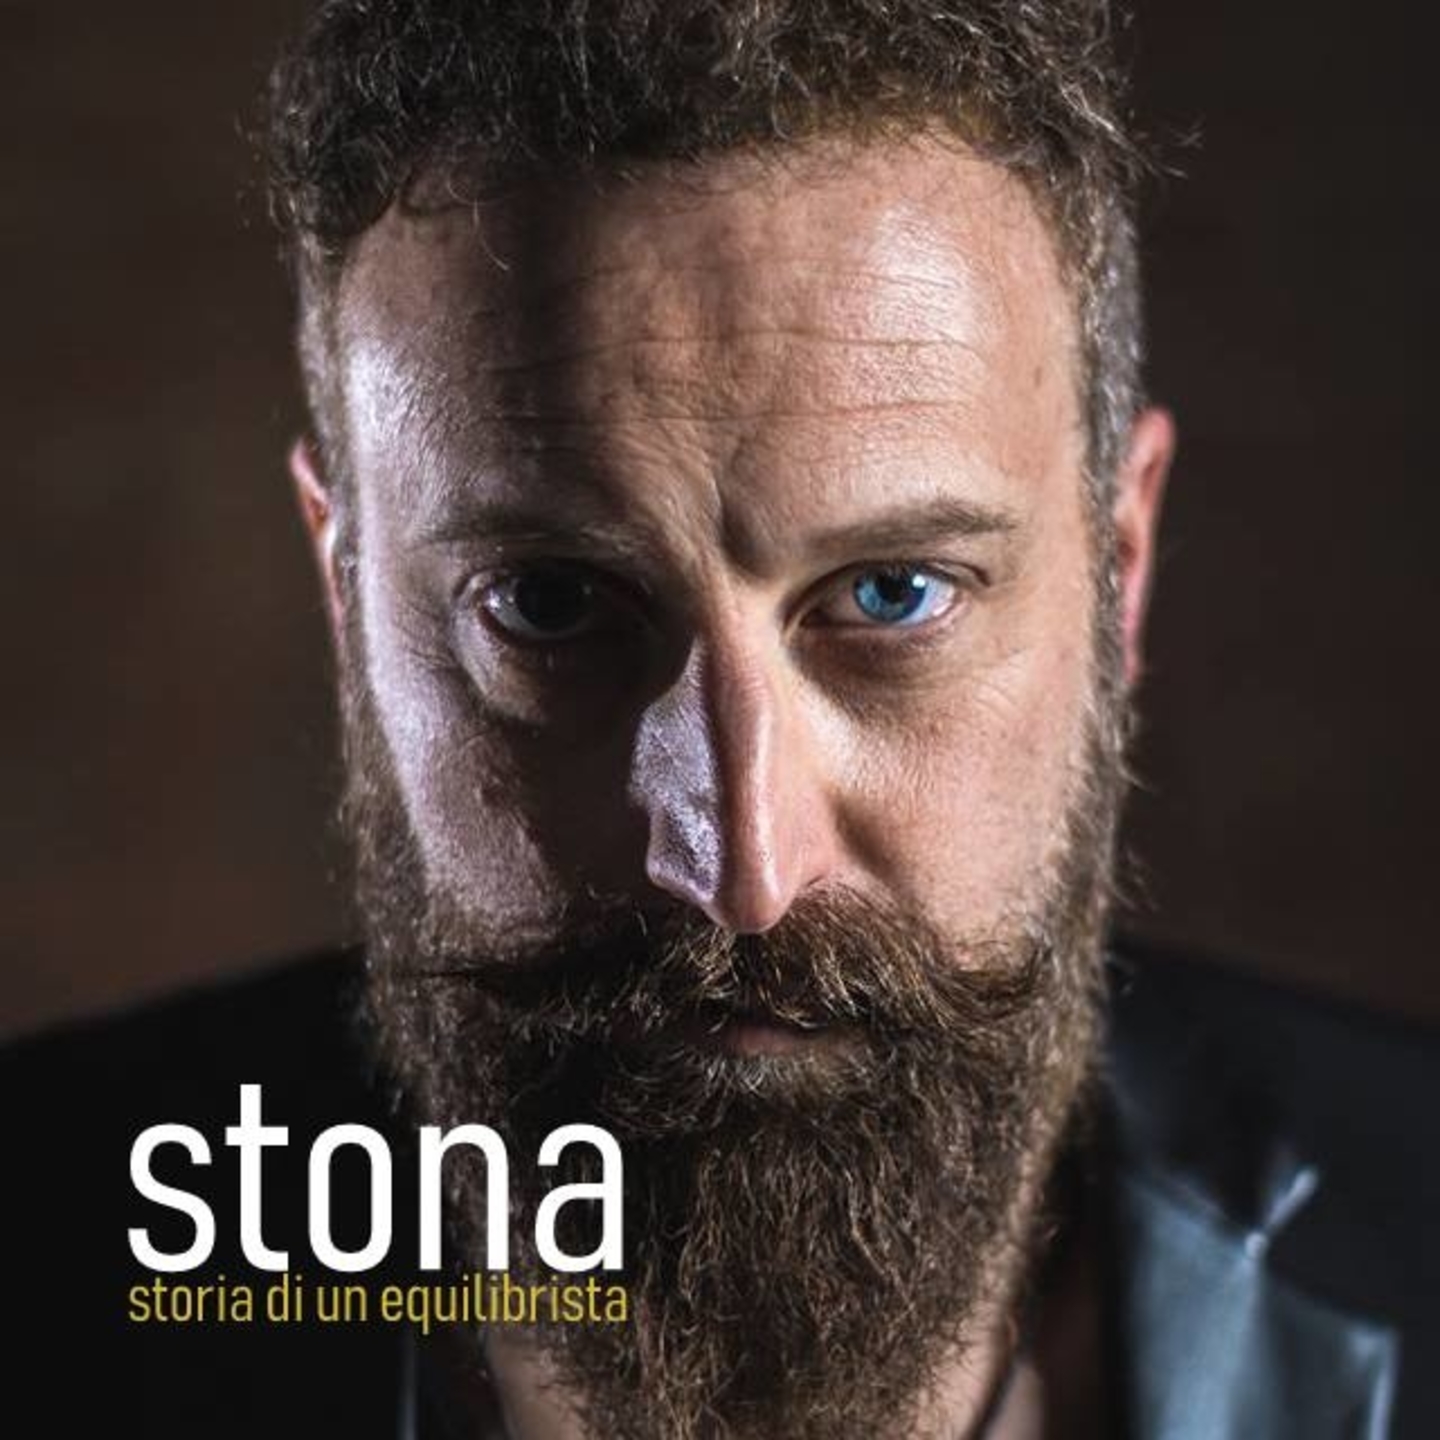 STONA “STORIA DI UN EQUILIBRISTA” è il primo singolo estratto dall’eponimo album prodotto dal maestro Guido Guglielminetti